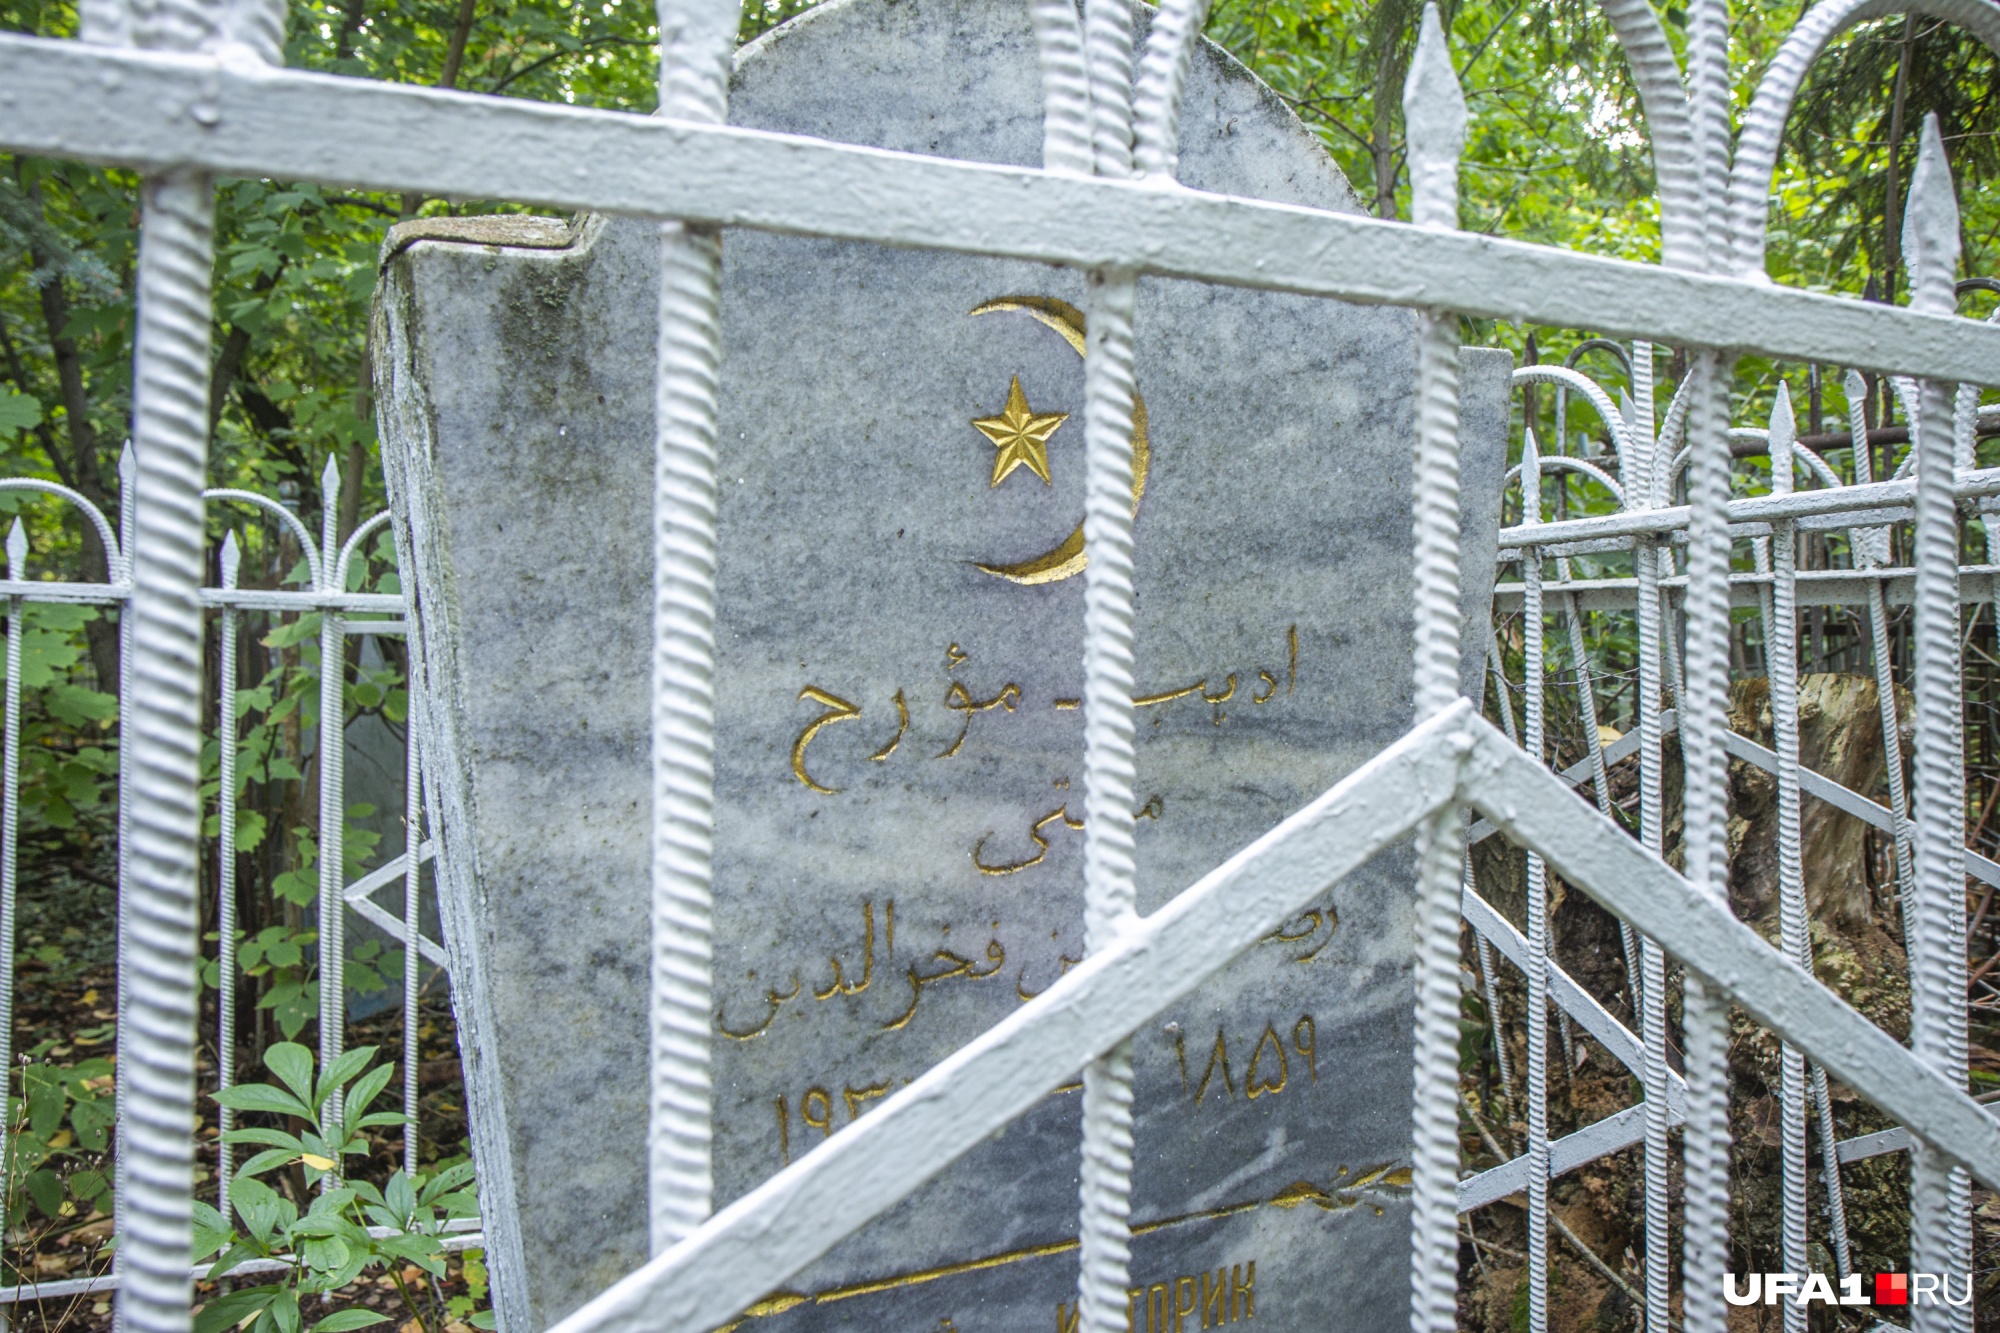 В 90-е годы муфтию установили новый памятник, а старое надгробие «отдали» сыну